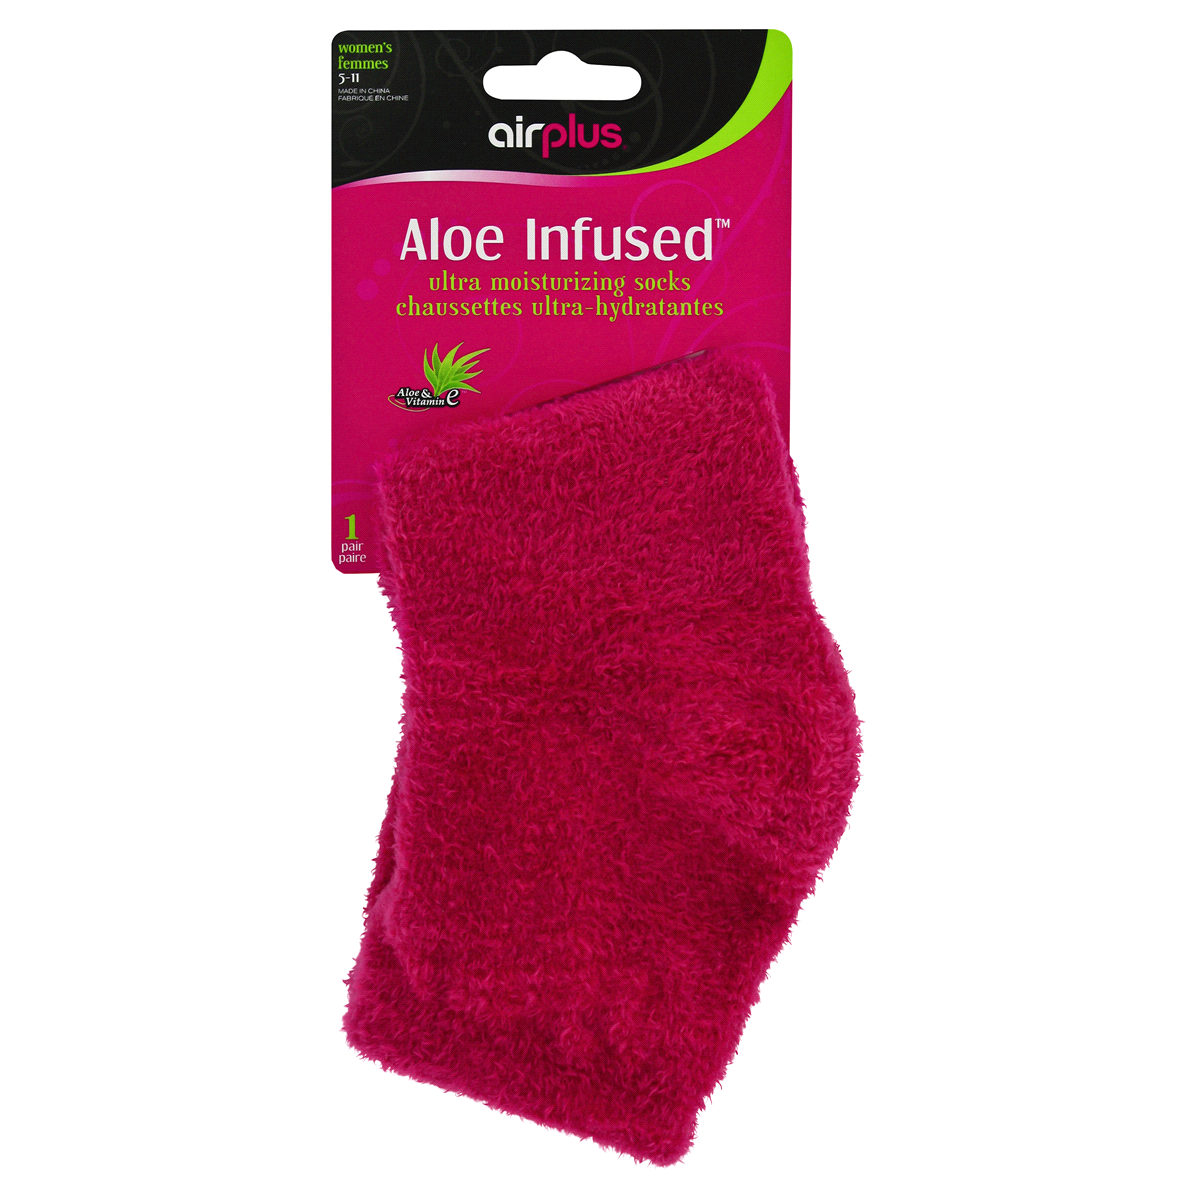 slide 1 of 1, Airplus Aloe Infused Sock, 1 ct